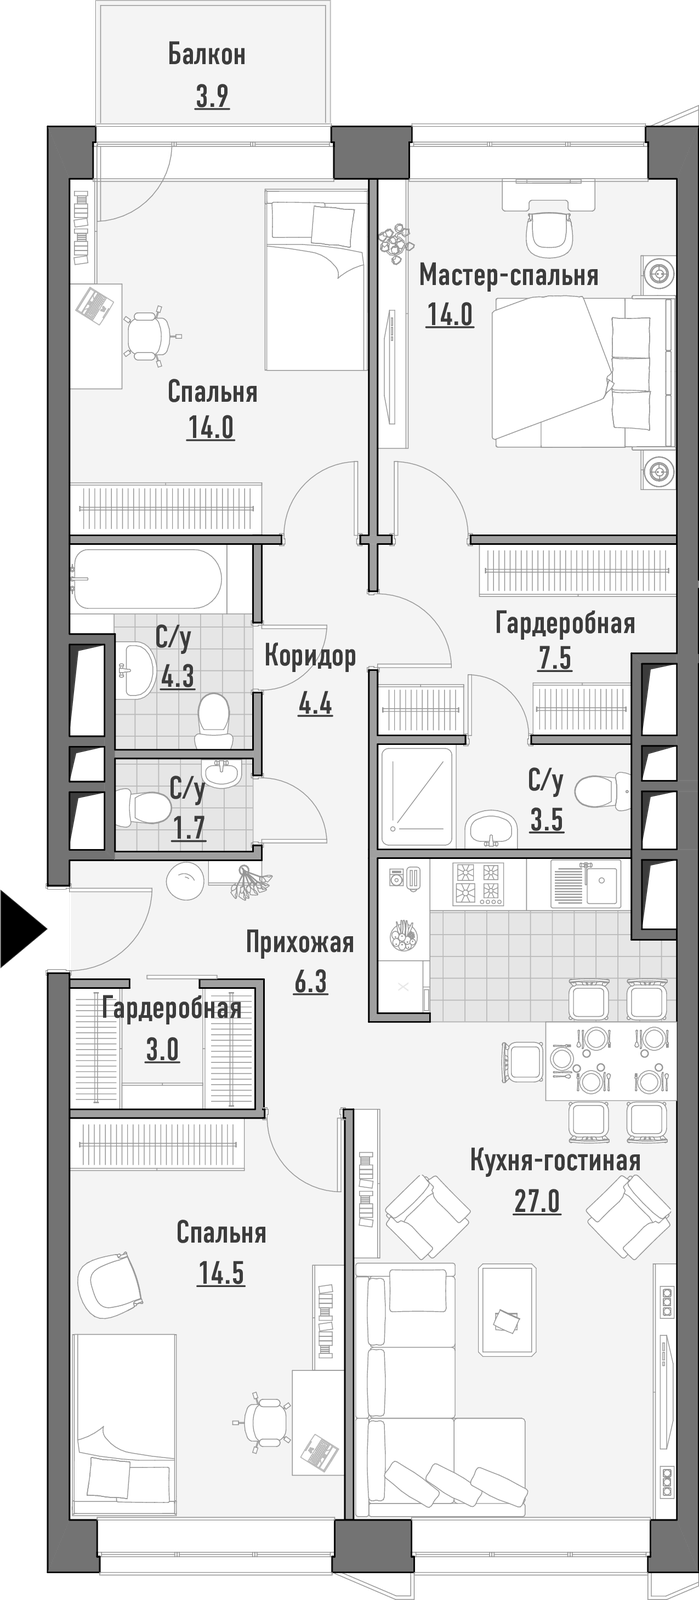 Продаётся 3-комнатная квартира в новостройке 100.6 кв.м. этаж 3/21 за 30 310 000 руб 